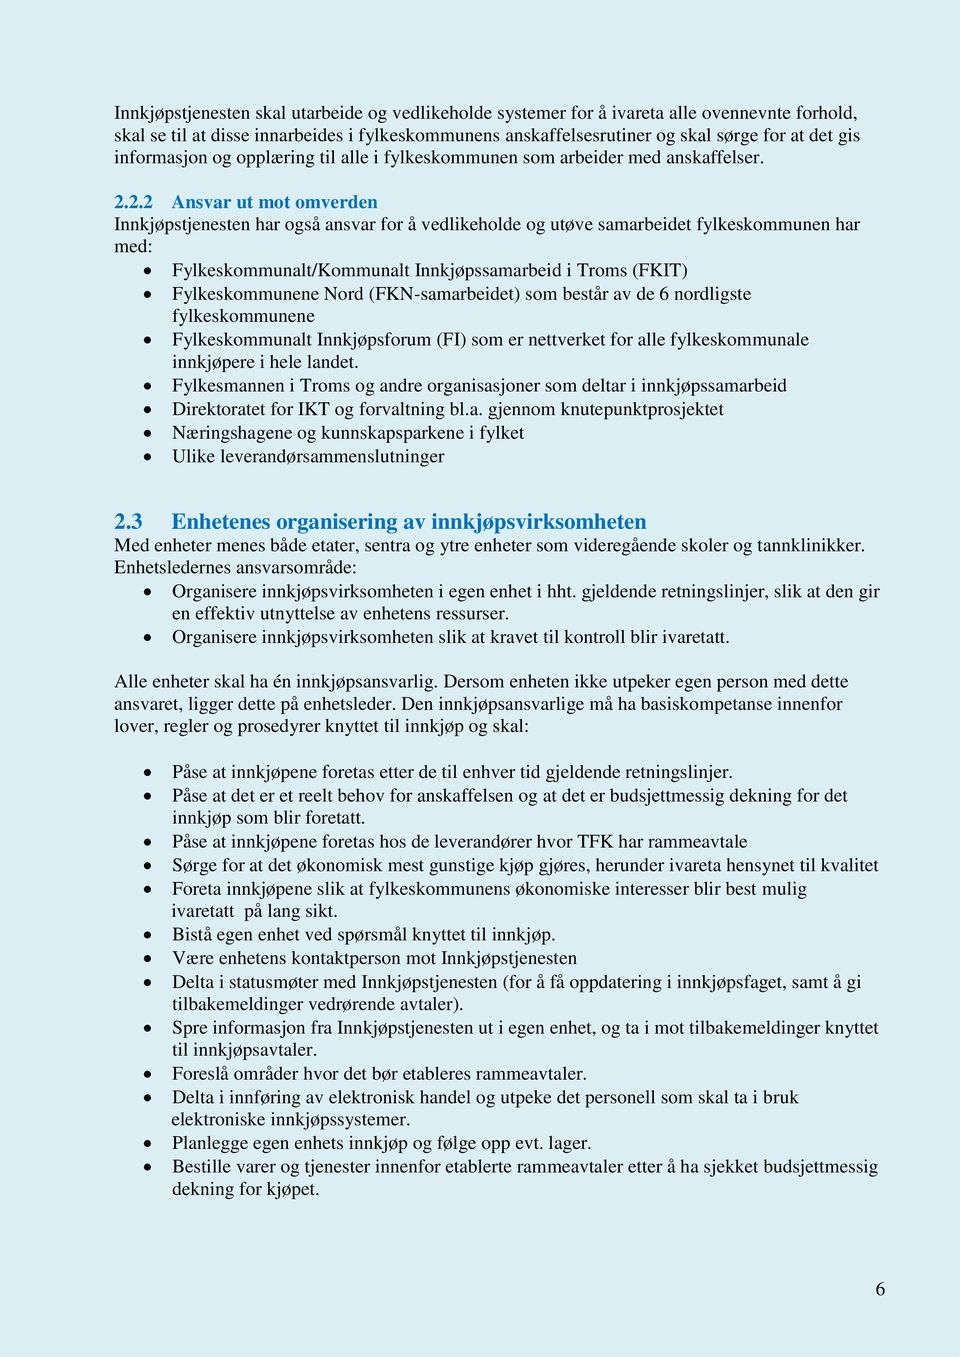 2.2 Ansvar ut mot omverden Innkjøpstjenesten har også ansvar for å vedlikeholde og utøve samarbeidet fylkeskommunen har med: Fylkeskommunalt/Kommunalt Innkjøpssamarbeid i Troms (FKIT) Fylkeskommunene